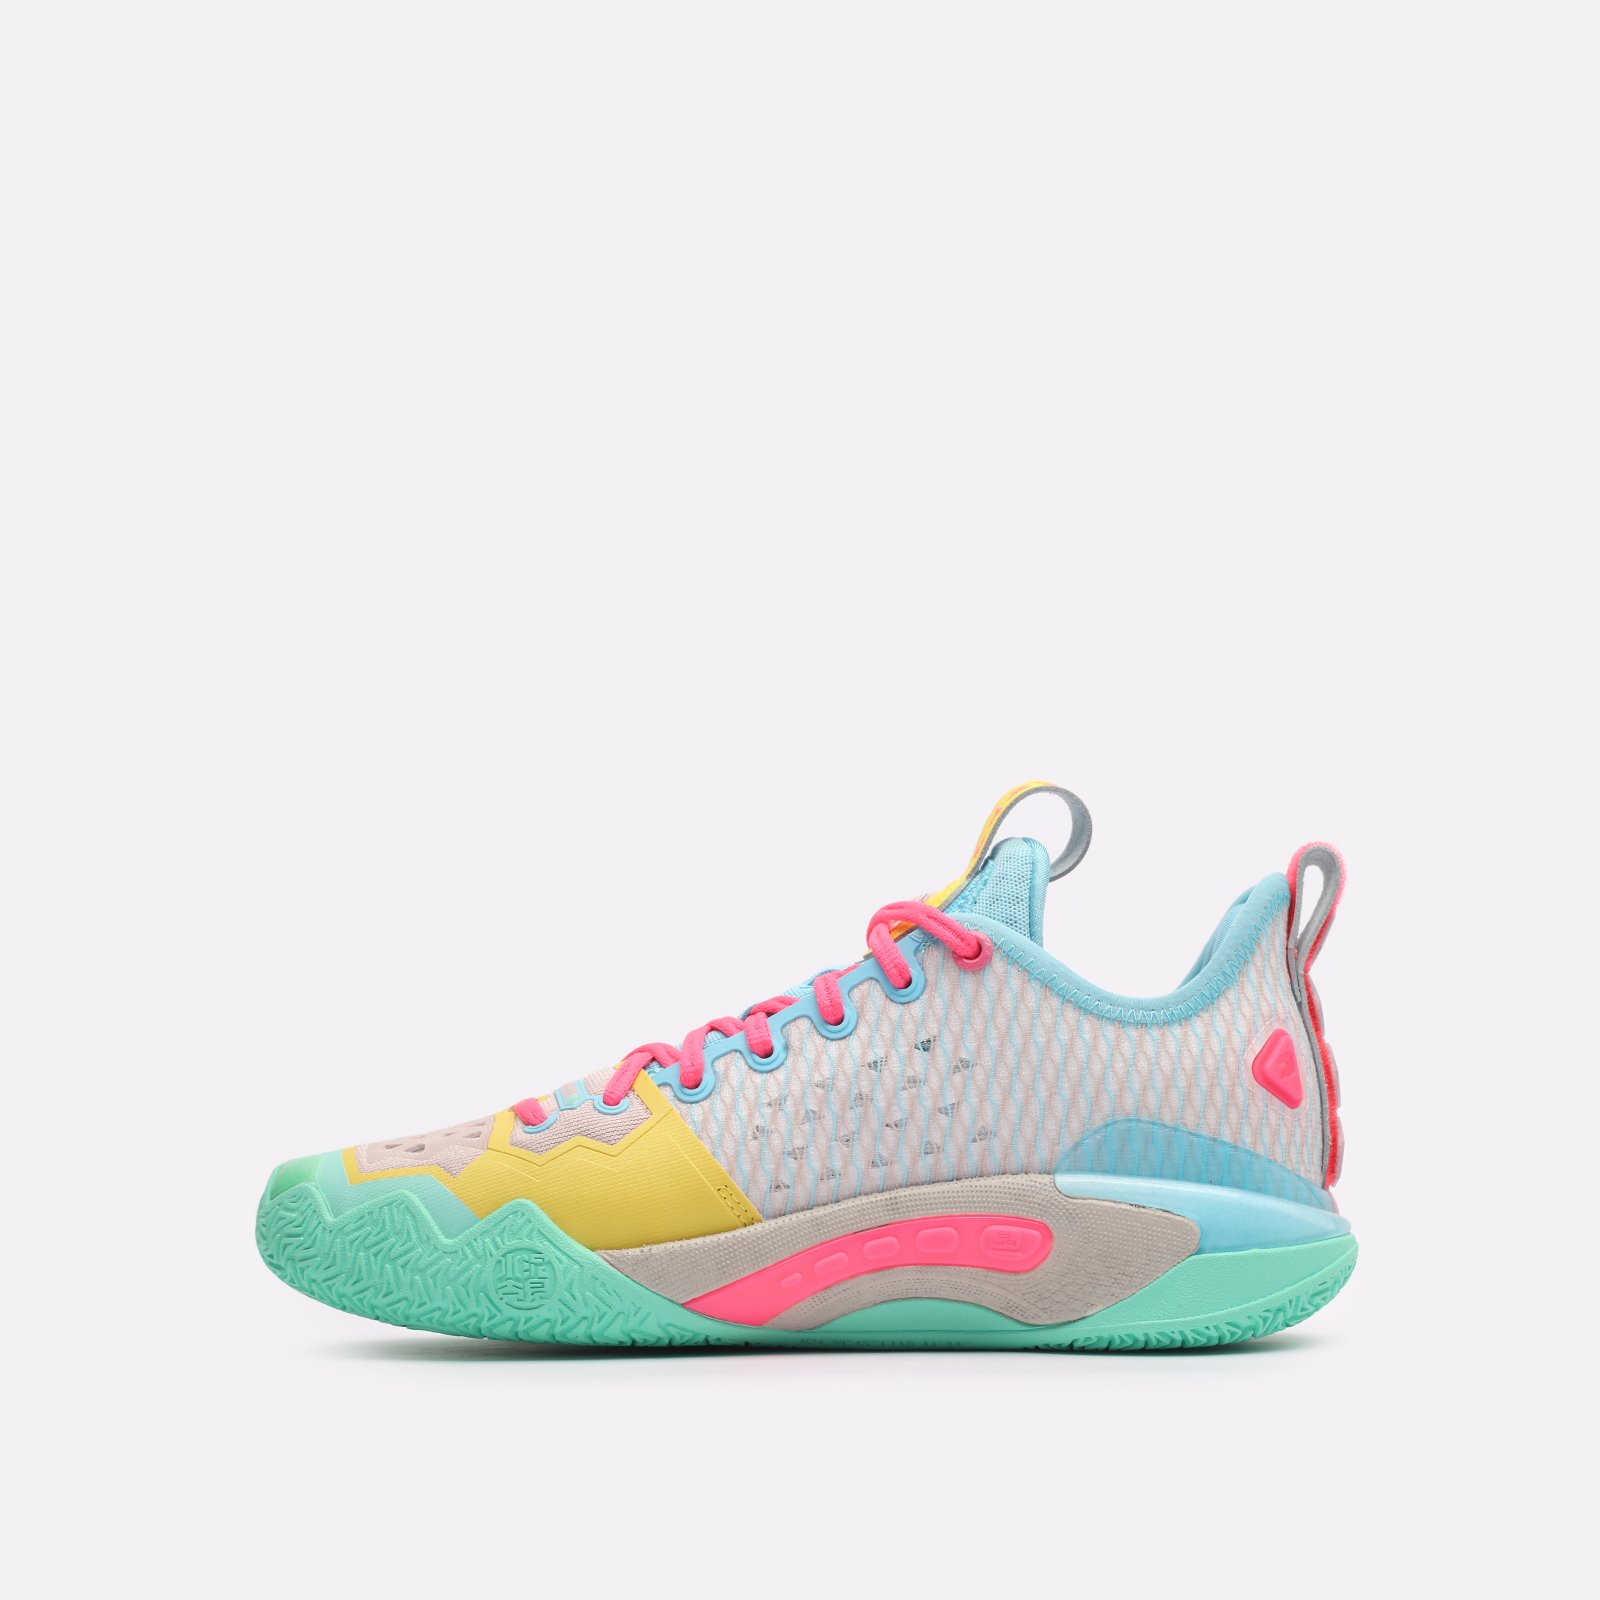 мужские разноцветные баскетбольные кроссовки ANTA Shock Wave 5.0 Pro 812341111-1 - цена, описание, фото 2